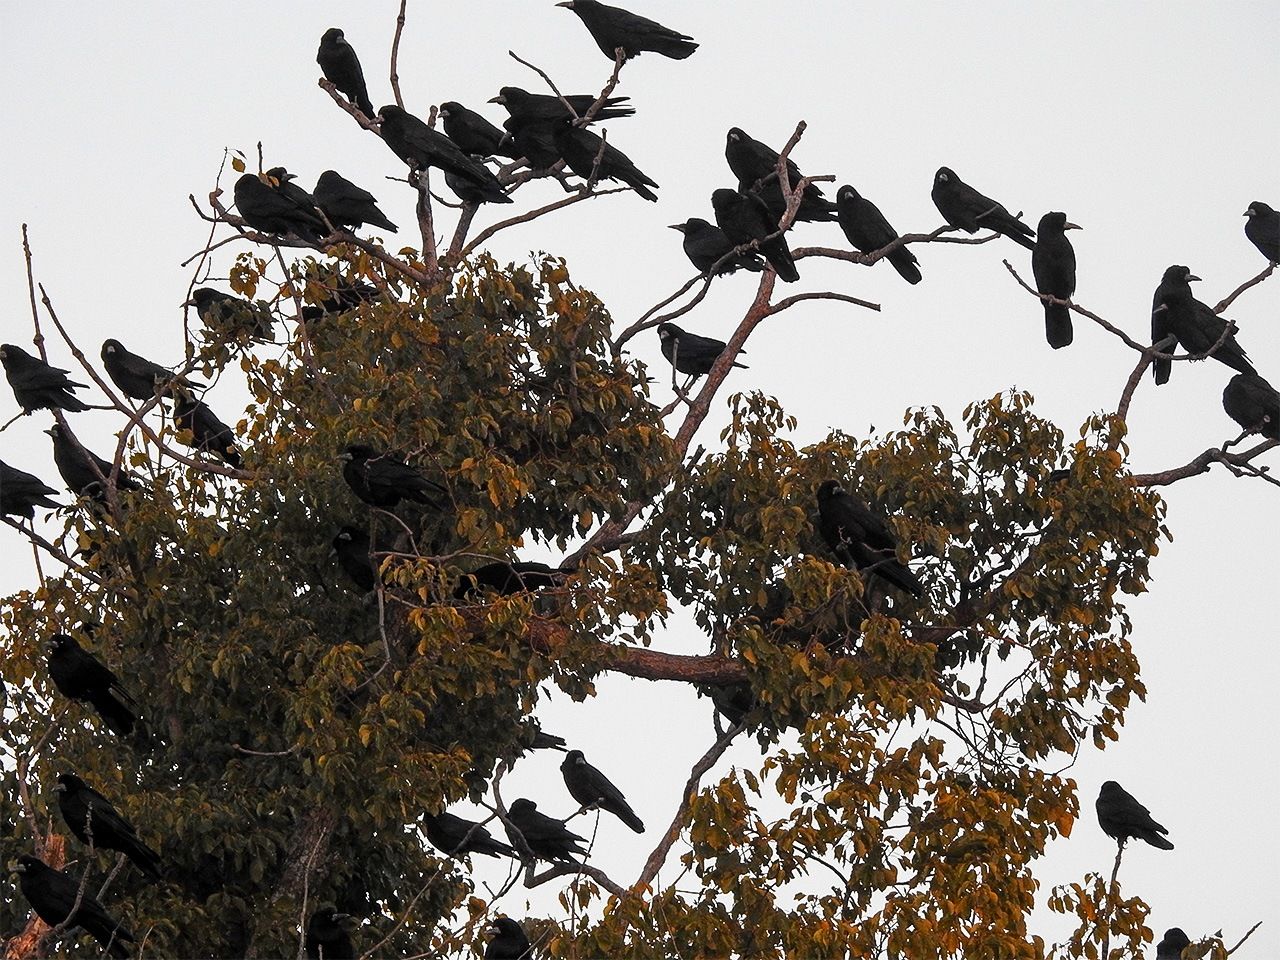 停落在路邊樹木上的烏鴉。糞便和噪音成為公害